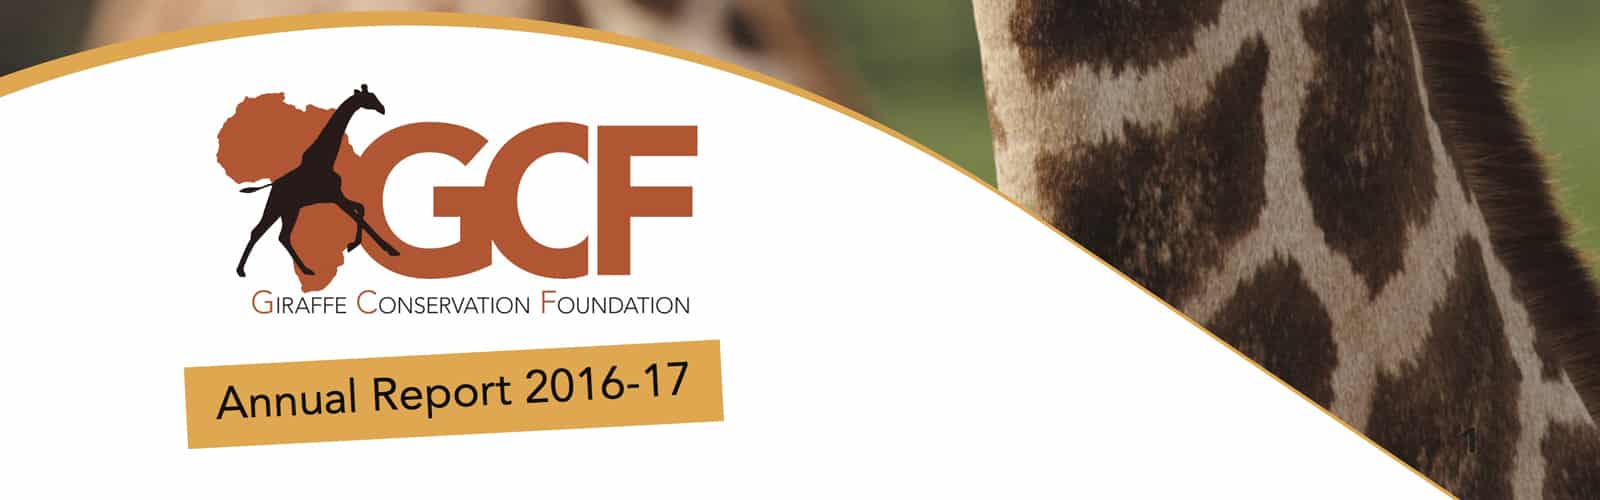 GCF Annual Report 2016/17